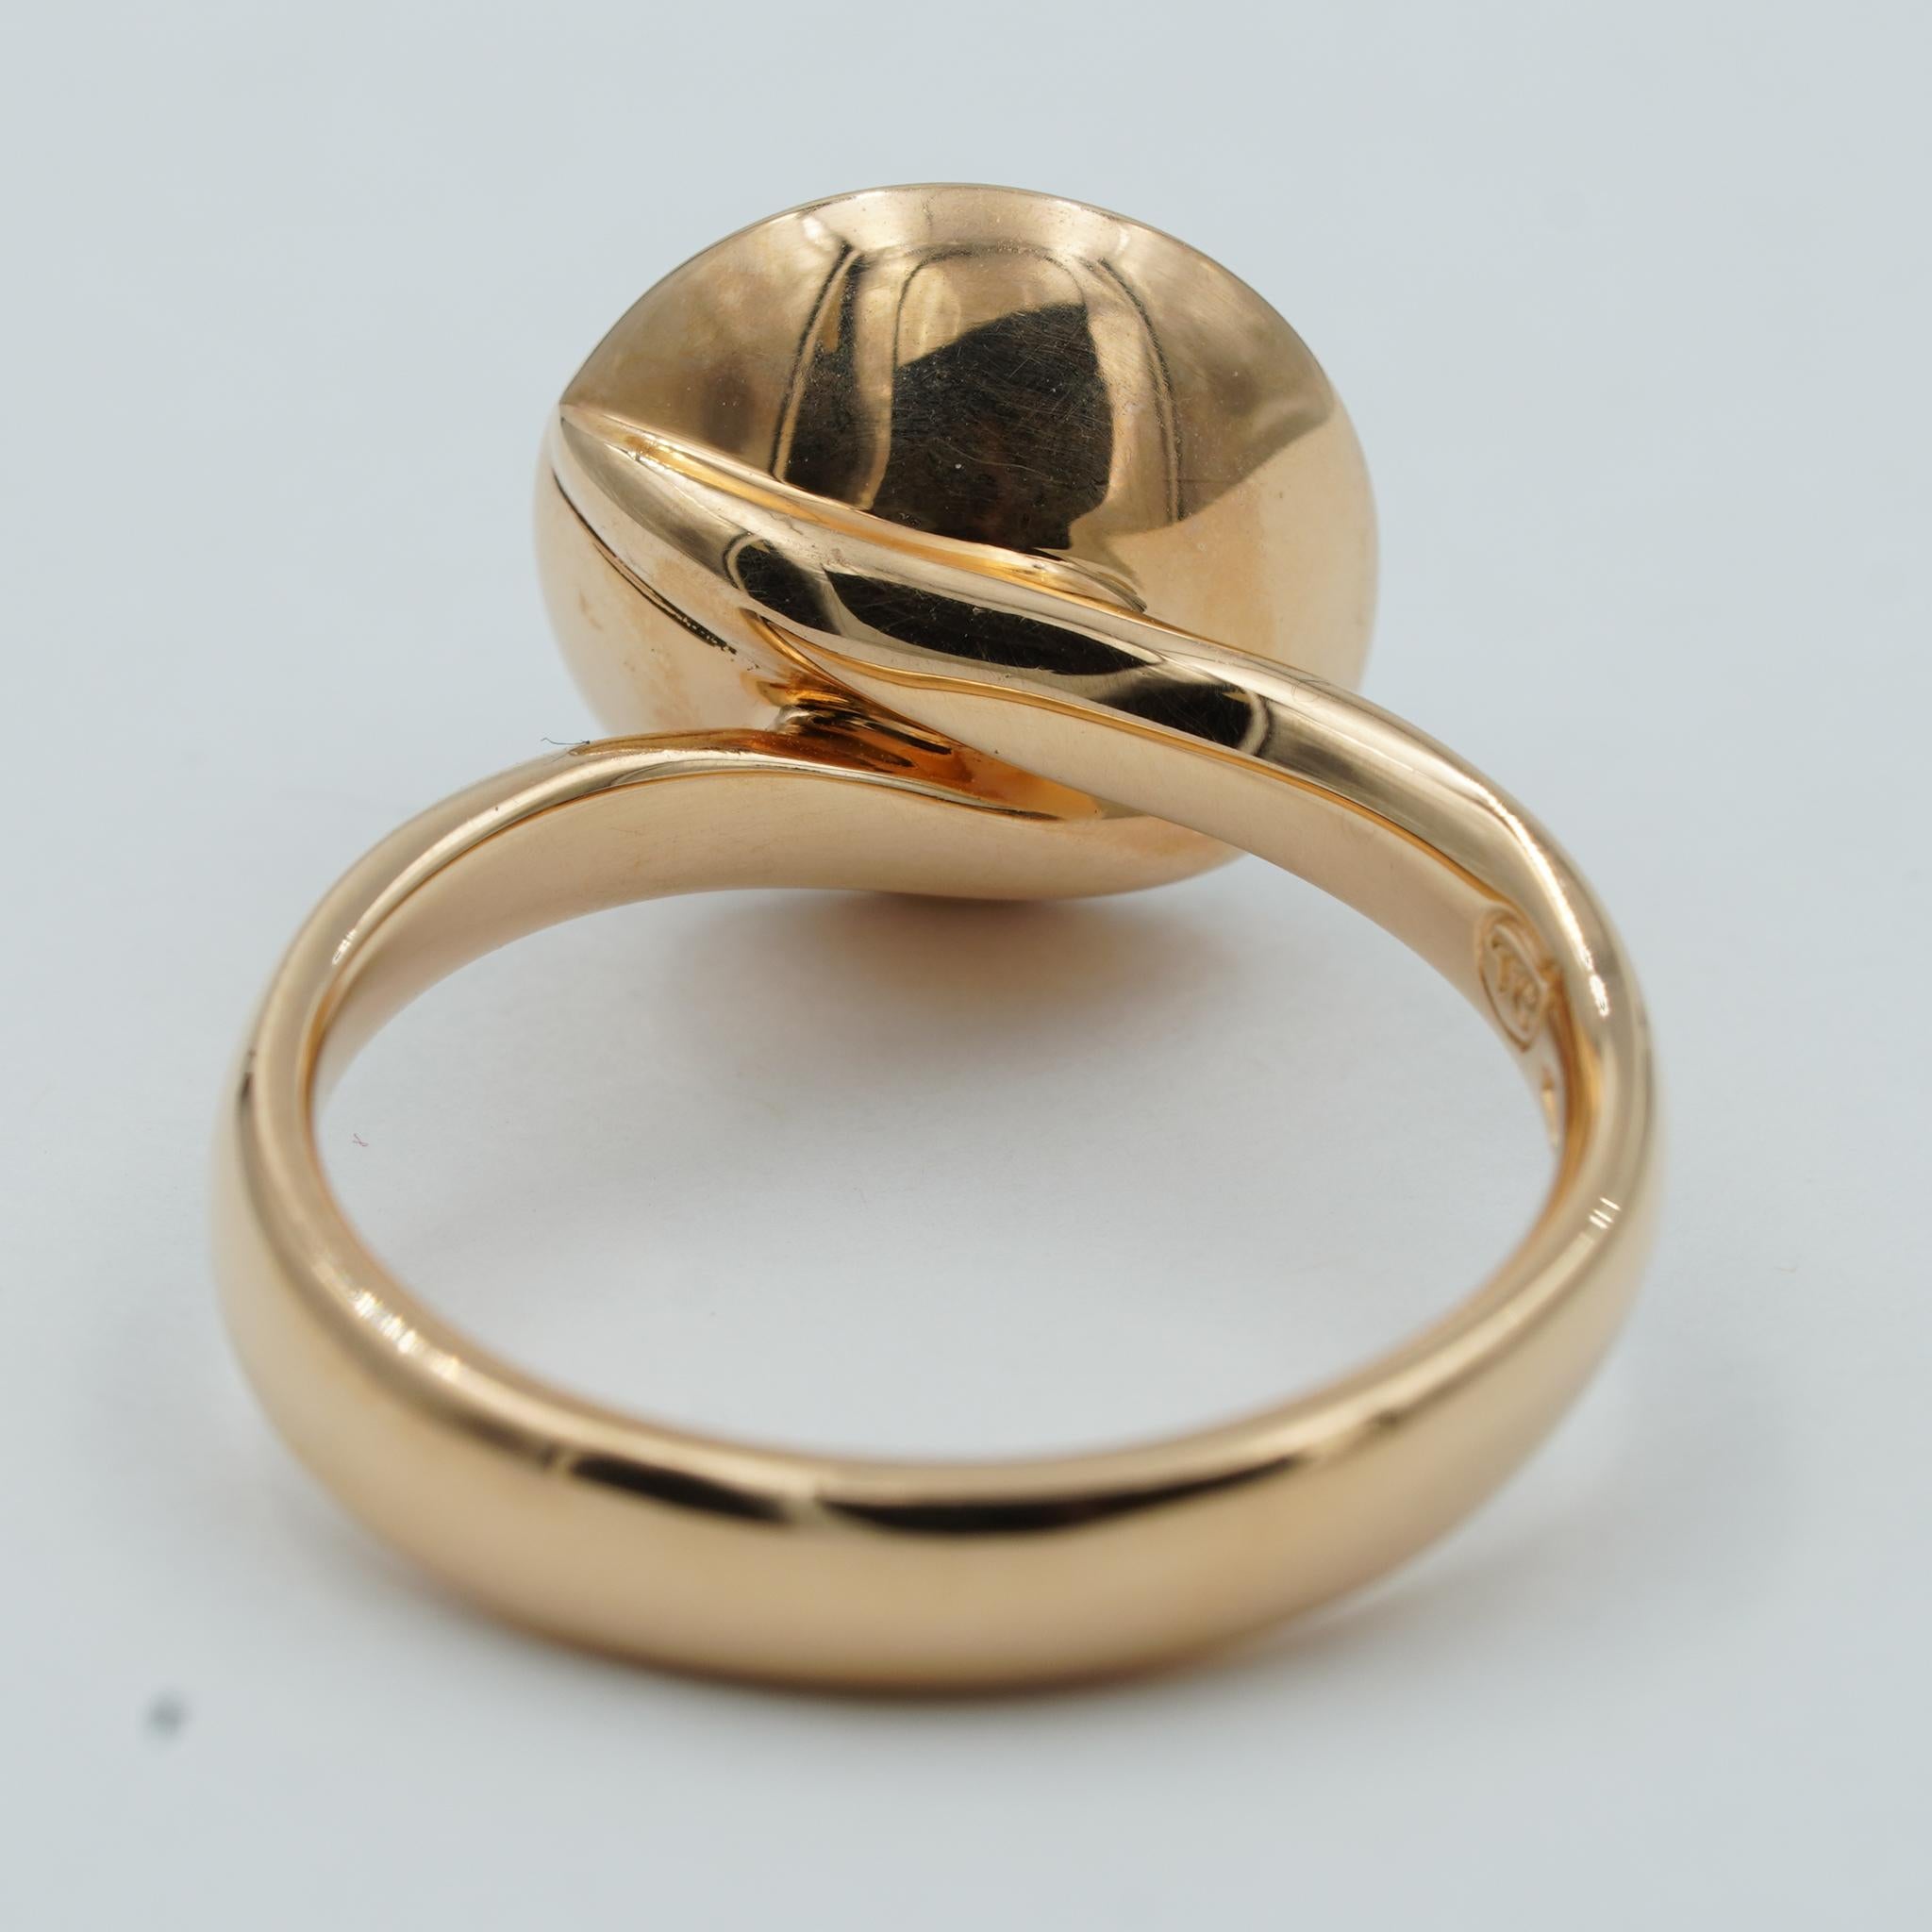 Cabochon Tamara Comolli Large Bouton Grey Moonstone Ring in 18k Rose Gold